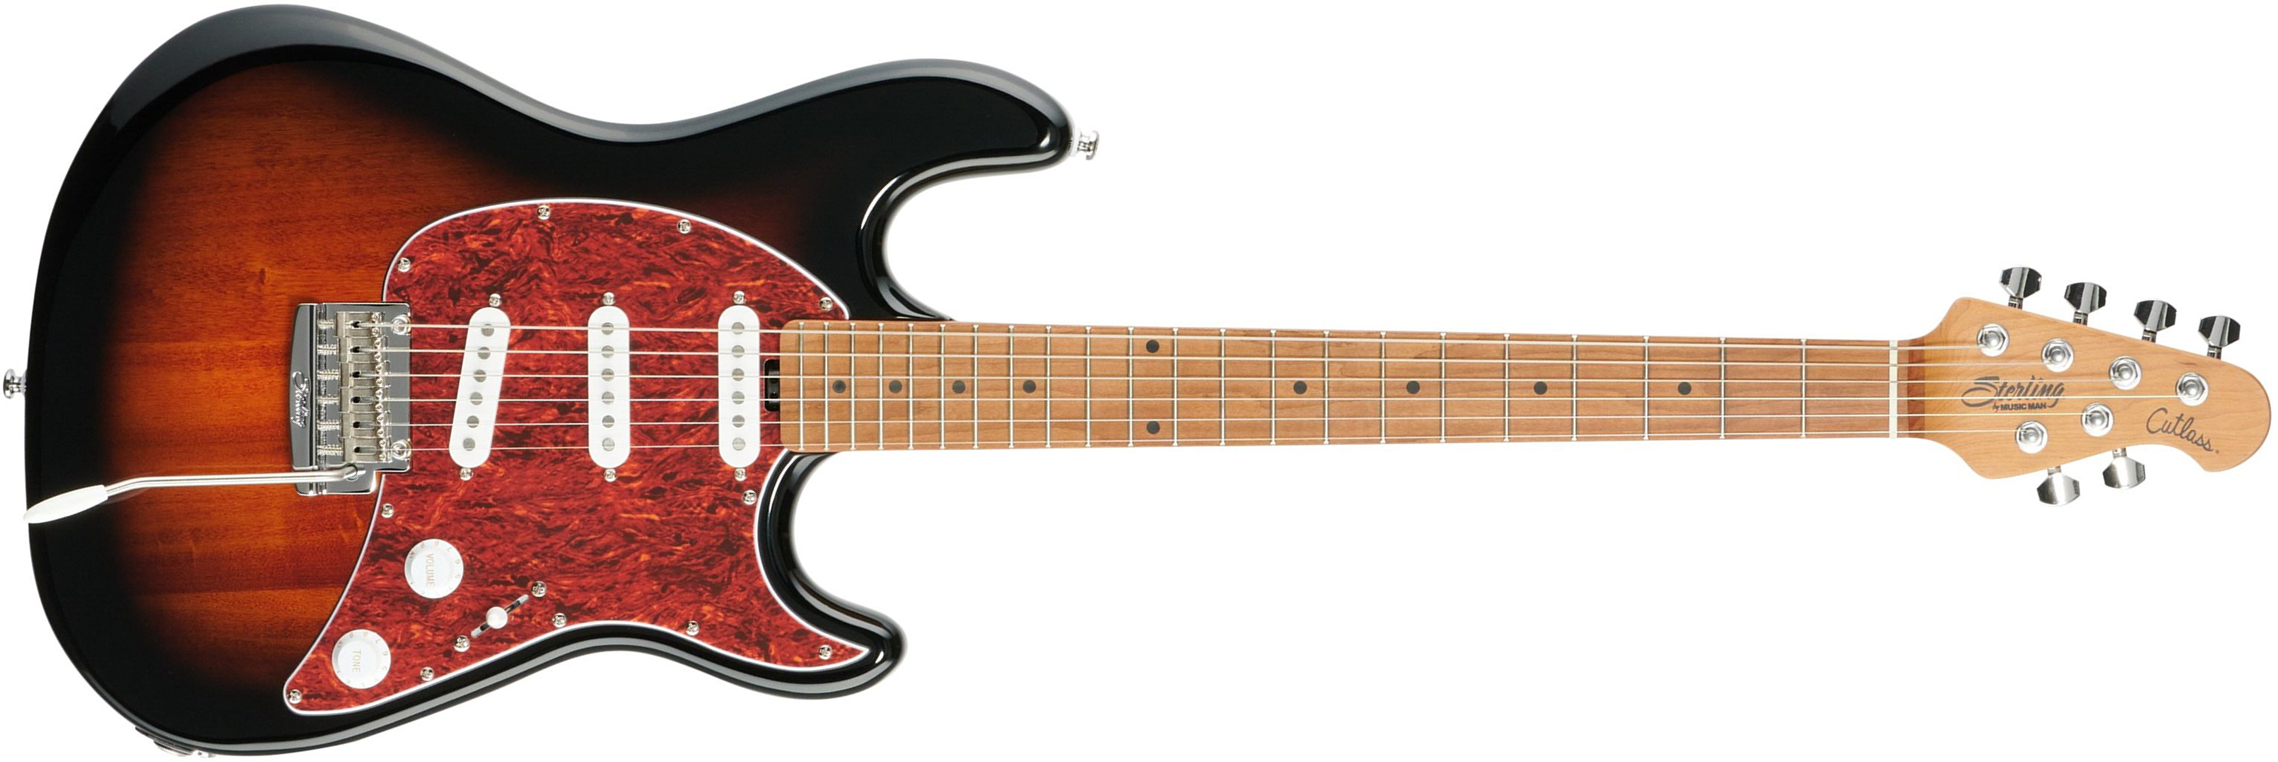 Sterling By Musicman Cutlass Ct50sss 3s Trem Mn - Vintage Sunburst - Guitarra eléctrica con forma de str. - Main picture